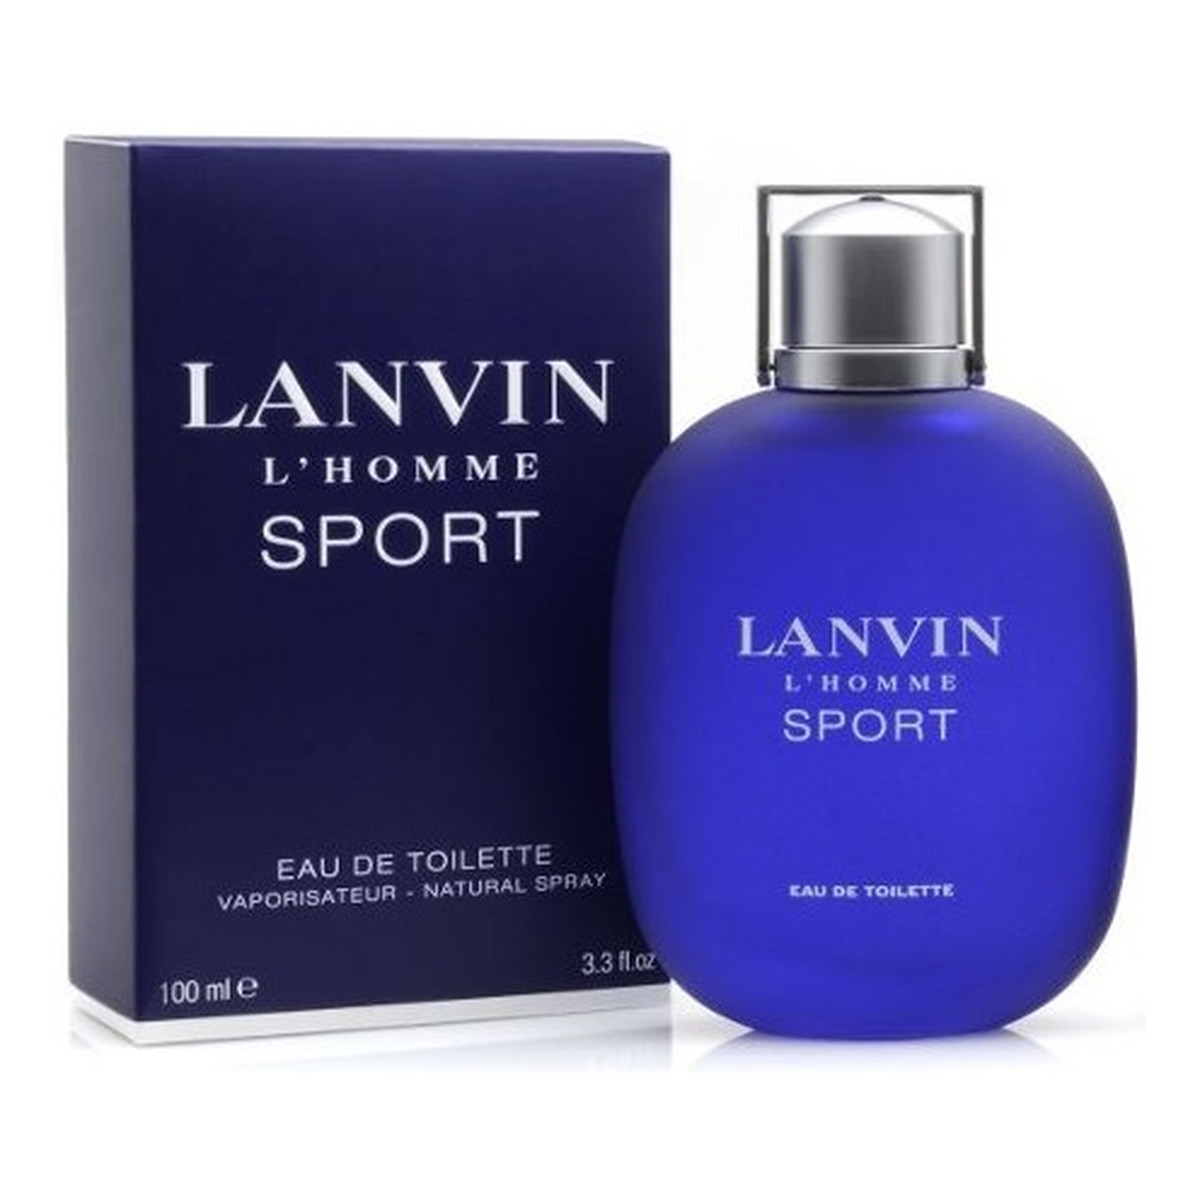 Lanvin L'Homme Sport woda toaletowa dla mężczyzn 100ml